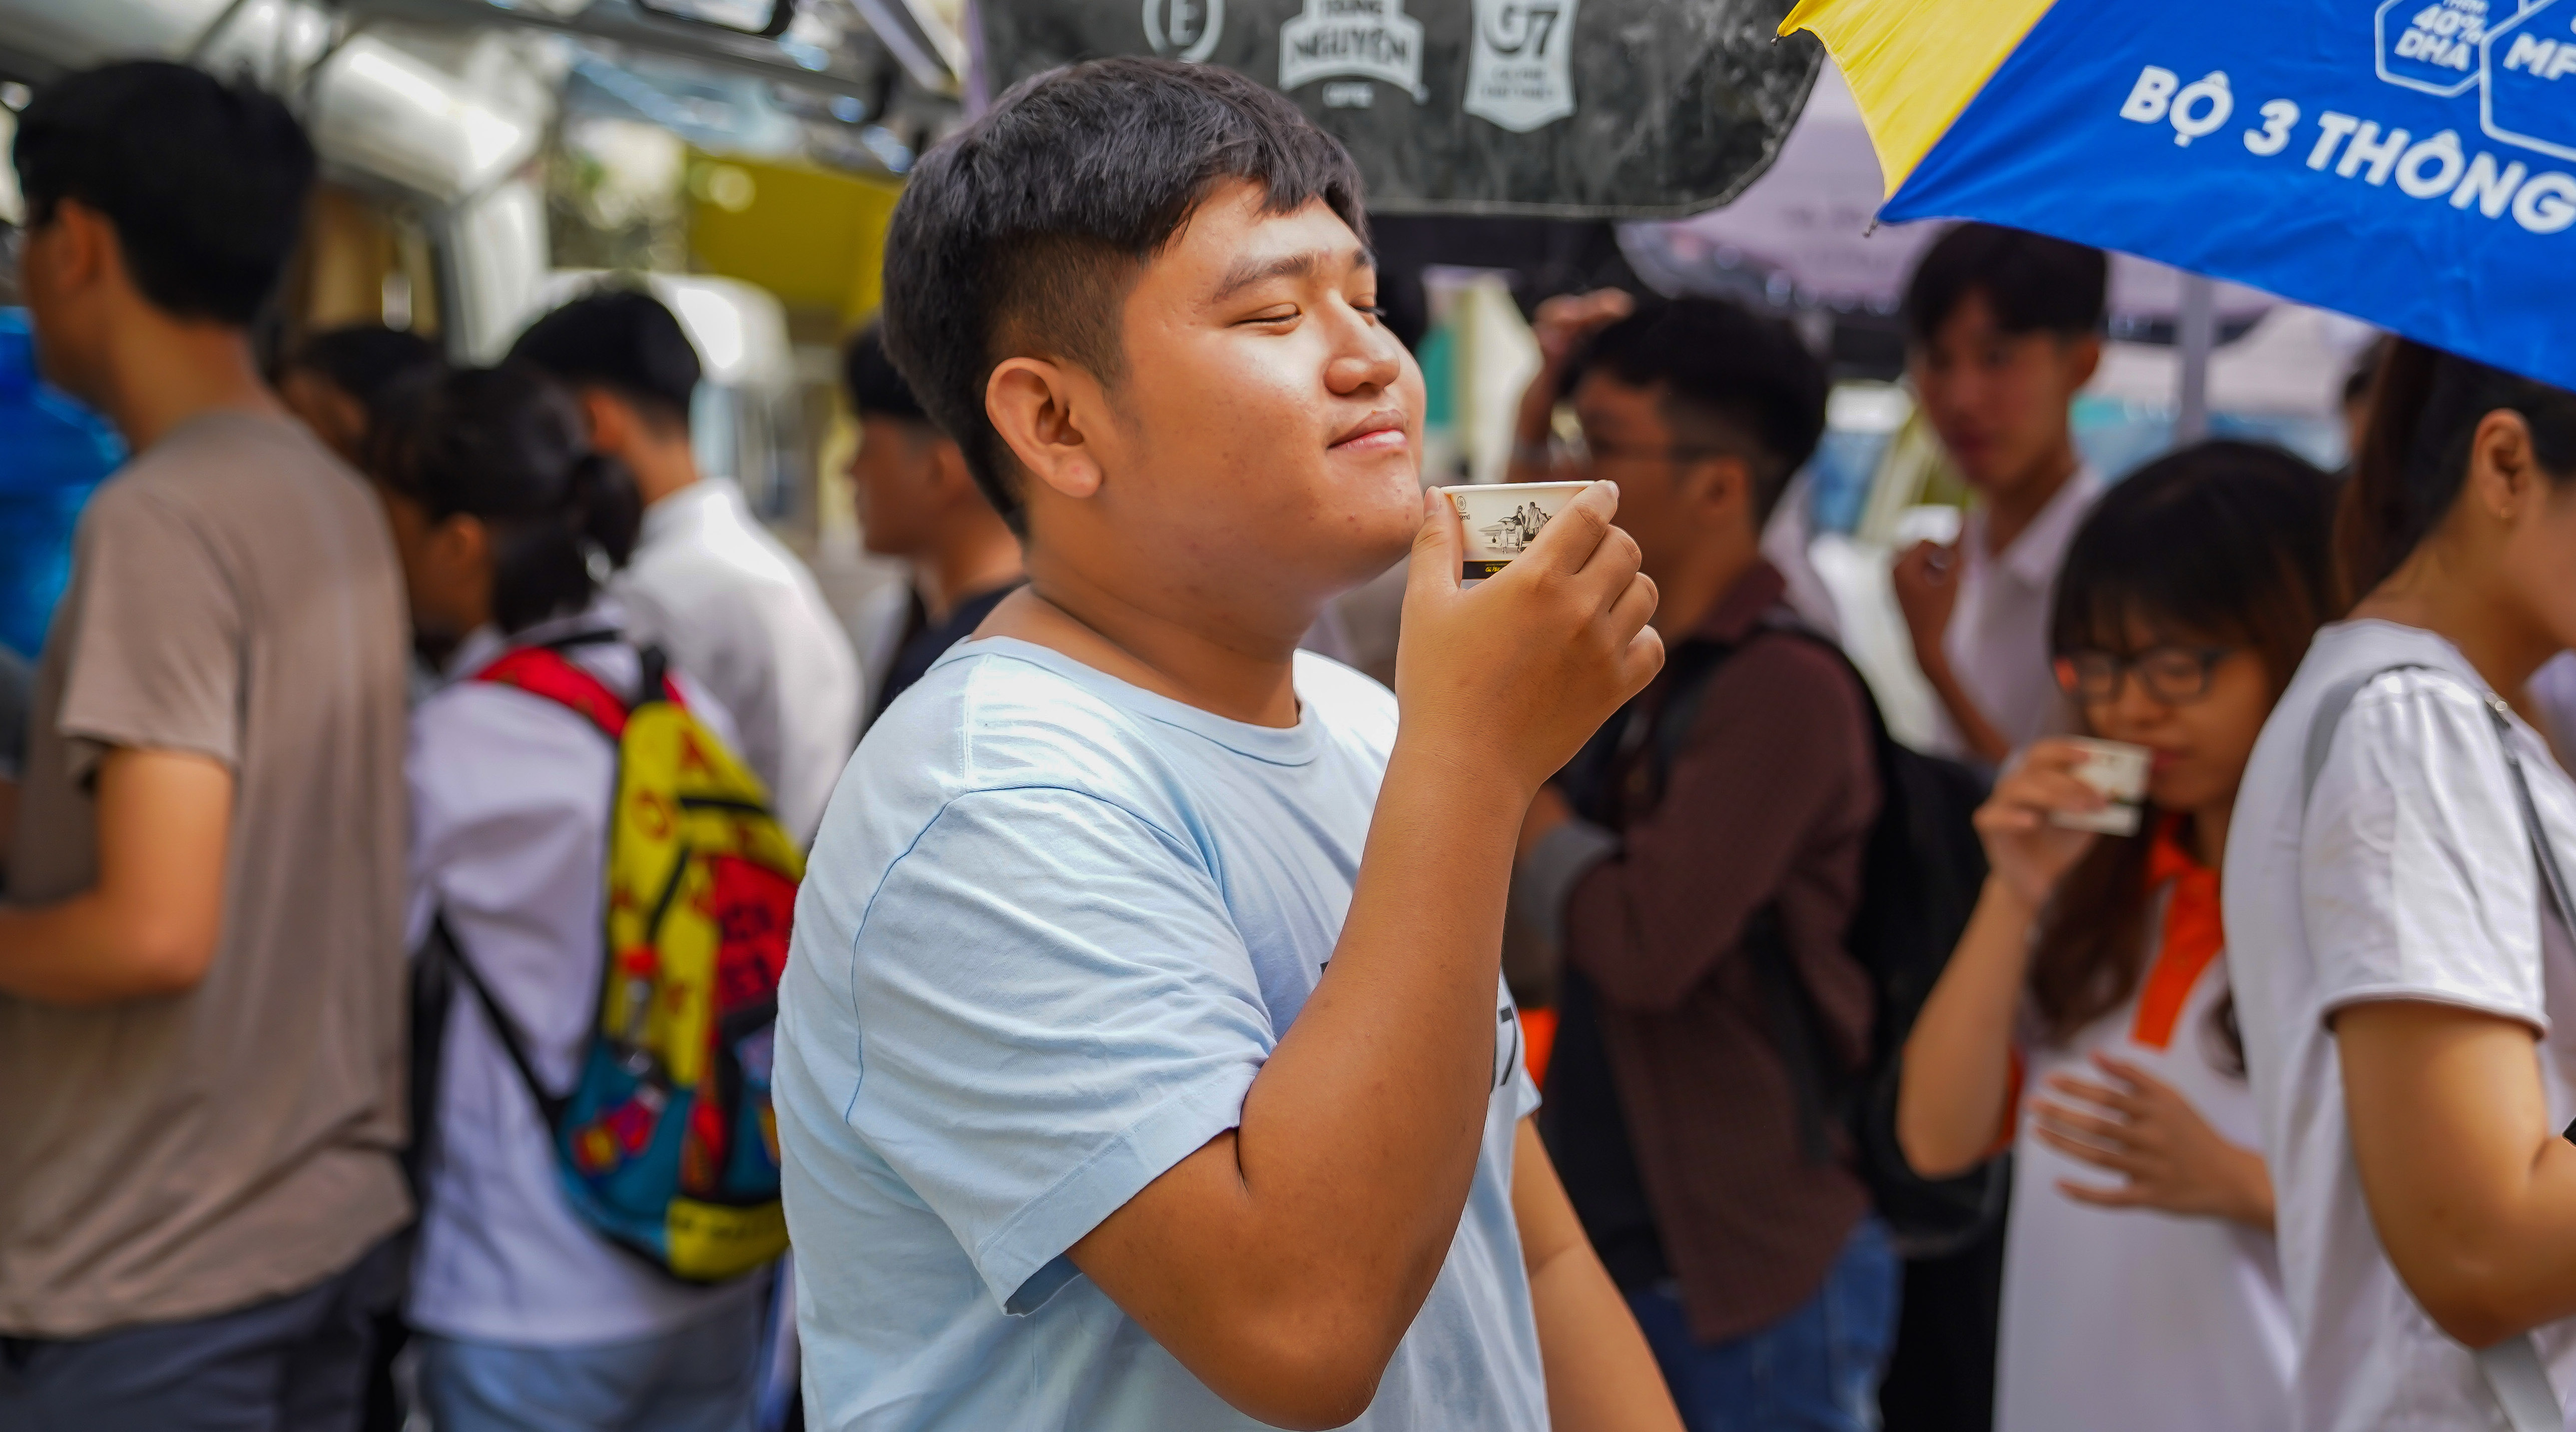   Bạn trẻ Trà Vinh biểu hiện cảm giác sung sướng sau khi uống ly cà phê Trung Nguyên